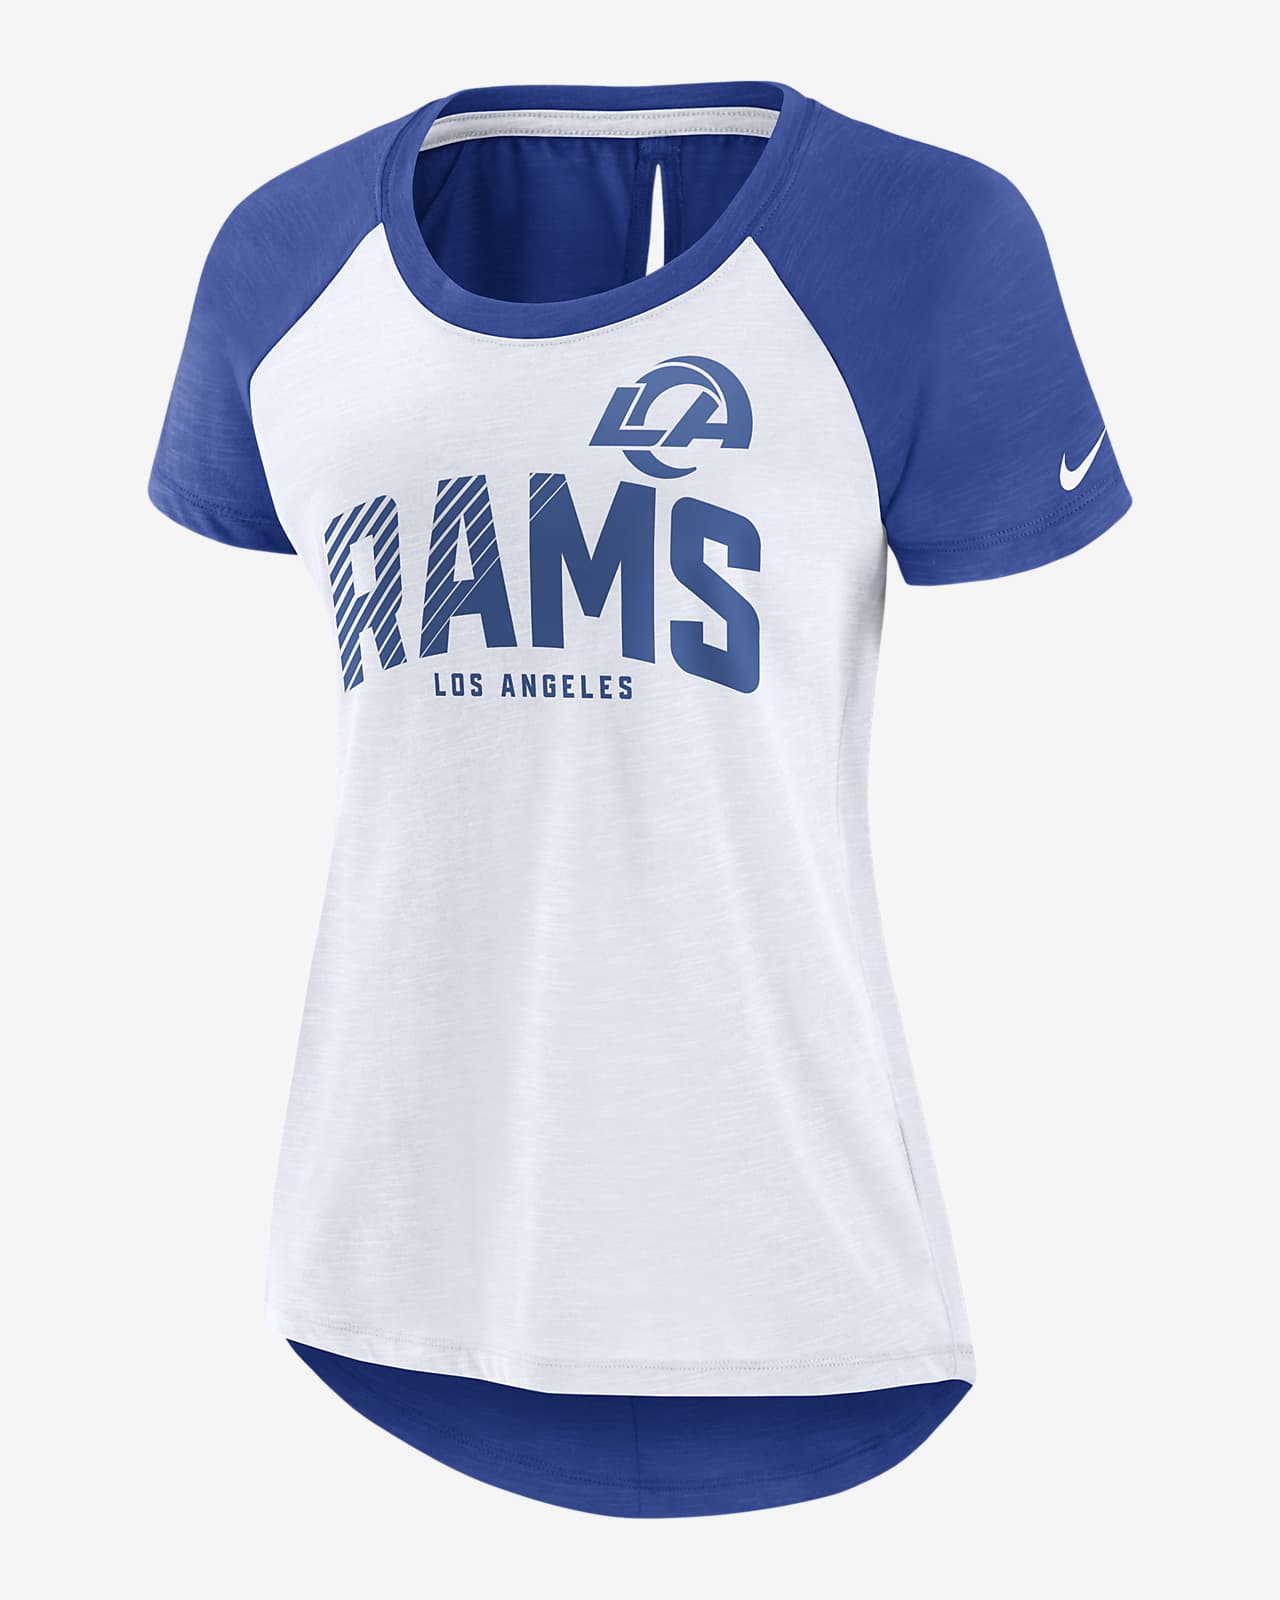 rams shirt for women